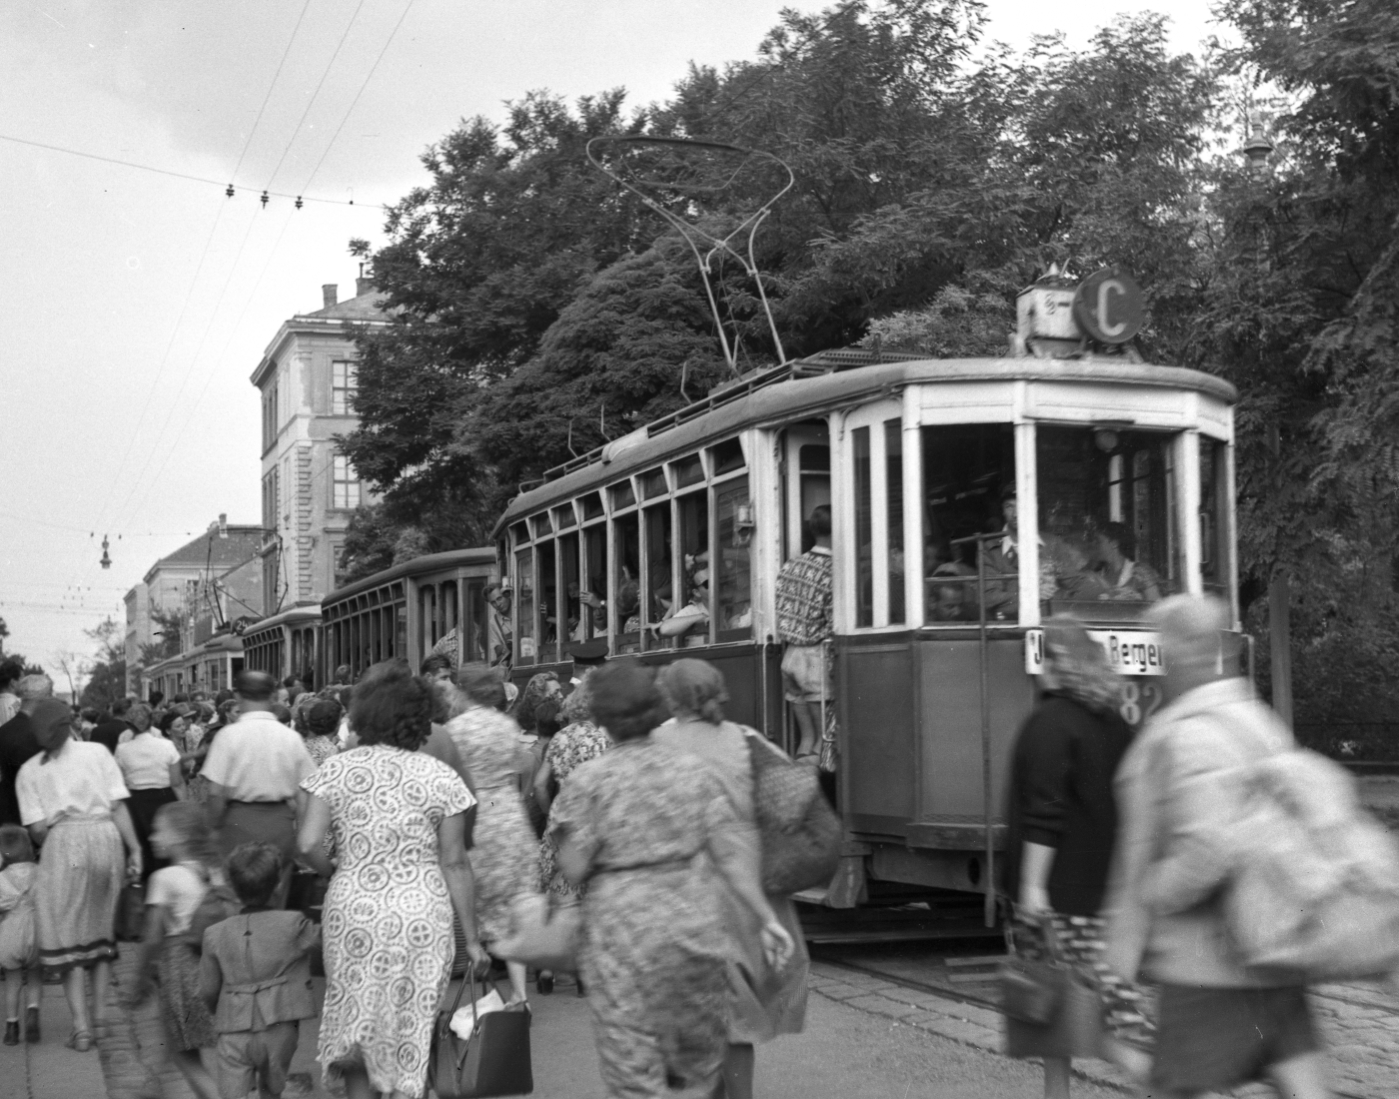 Bäderverkehr in der Schüttaustraße am Schüttauplatz mit einem Zug der Linie C Type K und zwei Tonnendachbeiwagen,vermutlich k3,etwa 1952 mit vielen Fahrgästen in der Station und im Zug.